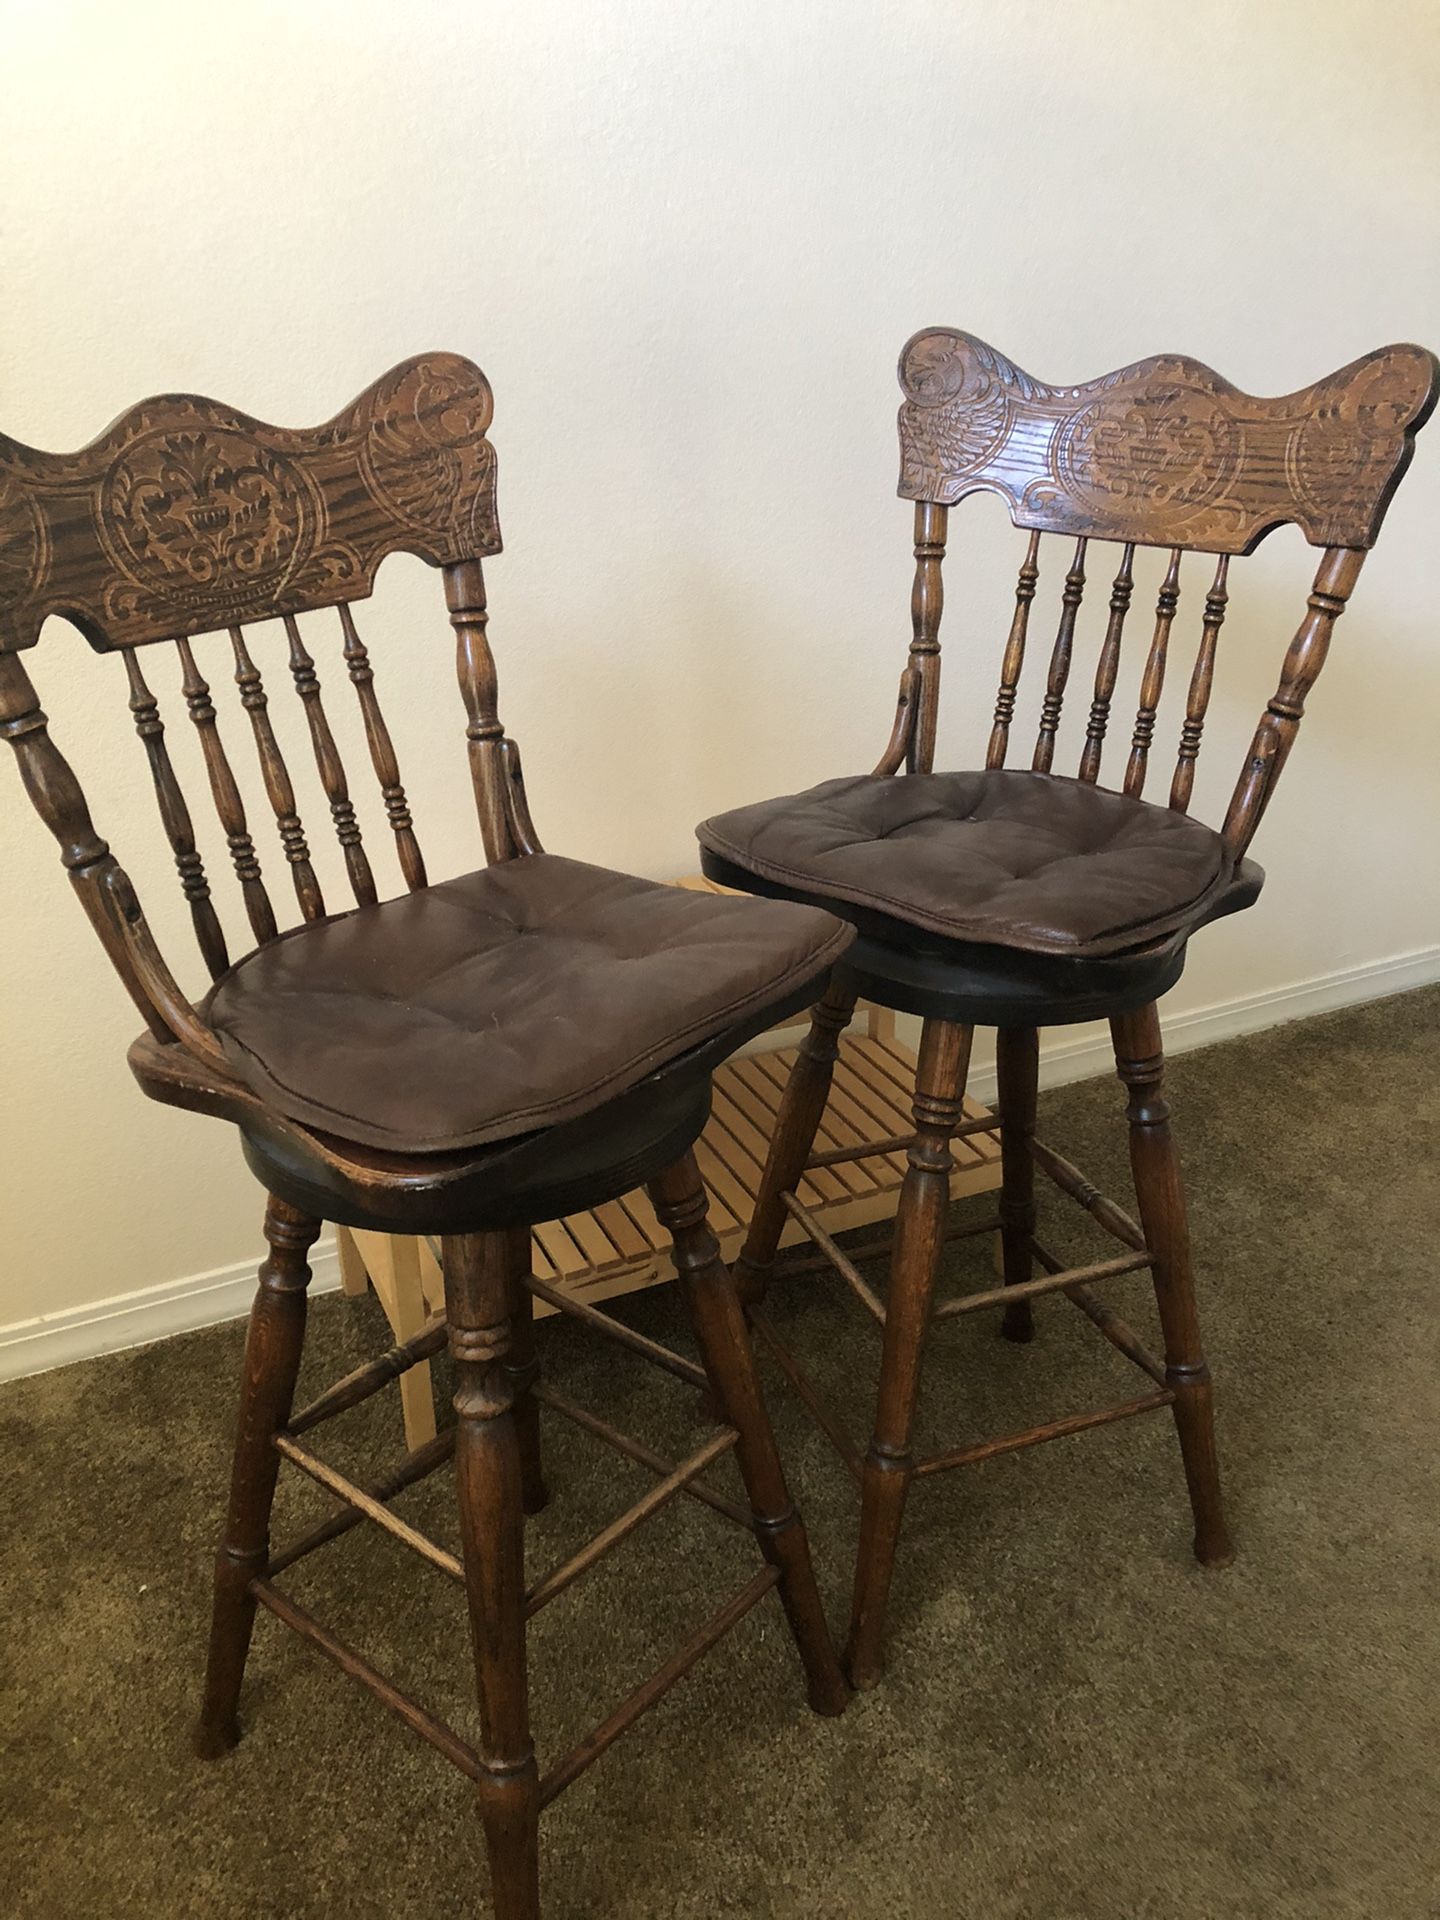 Antique bar stools